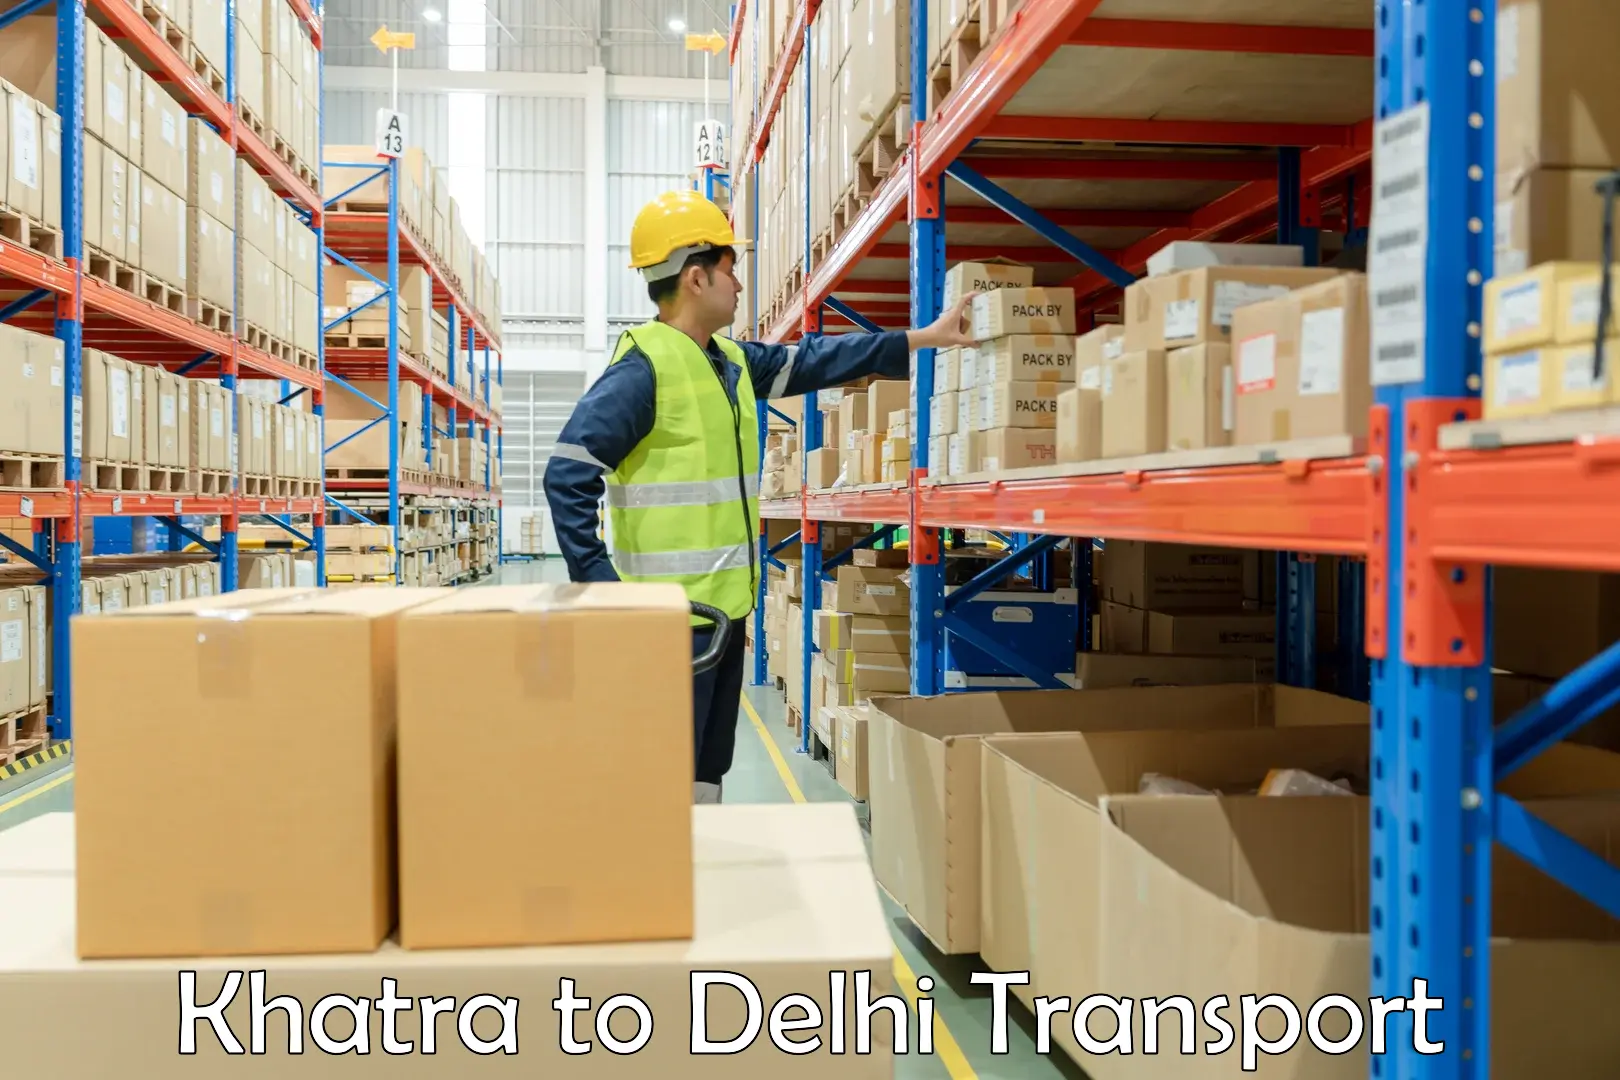 Domestic goods transportation services Khatra to IIT Delhi